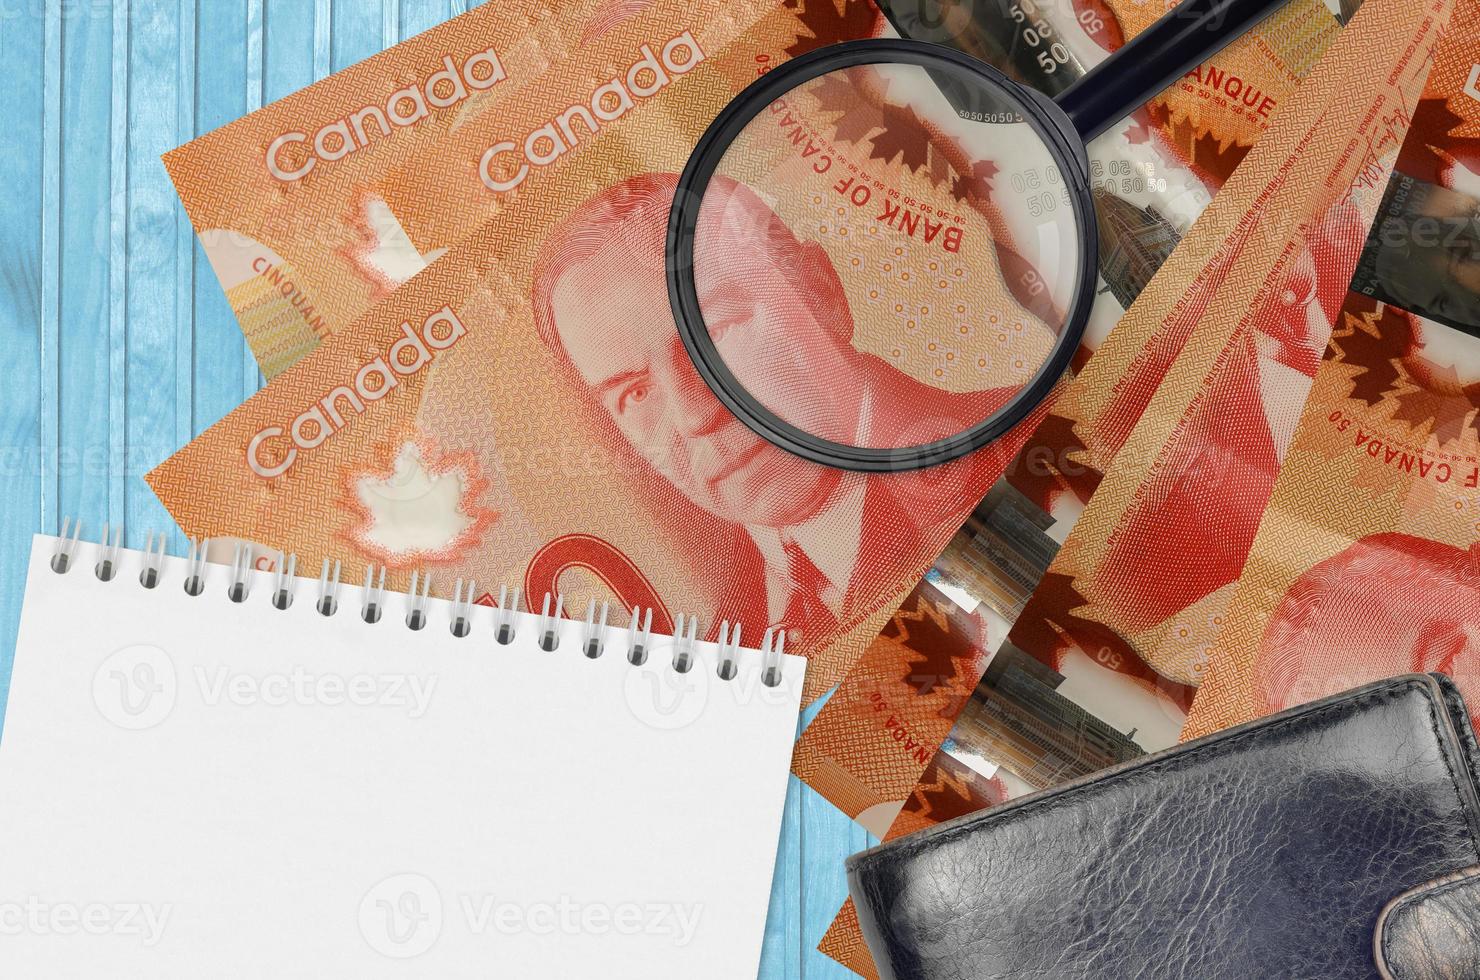 50 canadese dollari fatture e ingrandimento bicchiere con nero borsa e bloc notes. concetto di contraffazione i soldi. ricerca per differenze nel dettagli su i soldi fatture per individuare falso foto